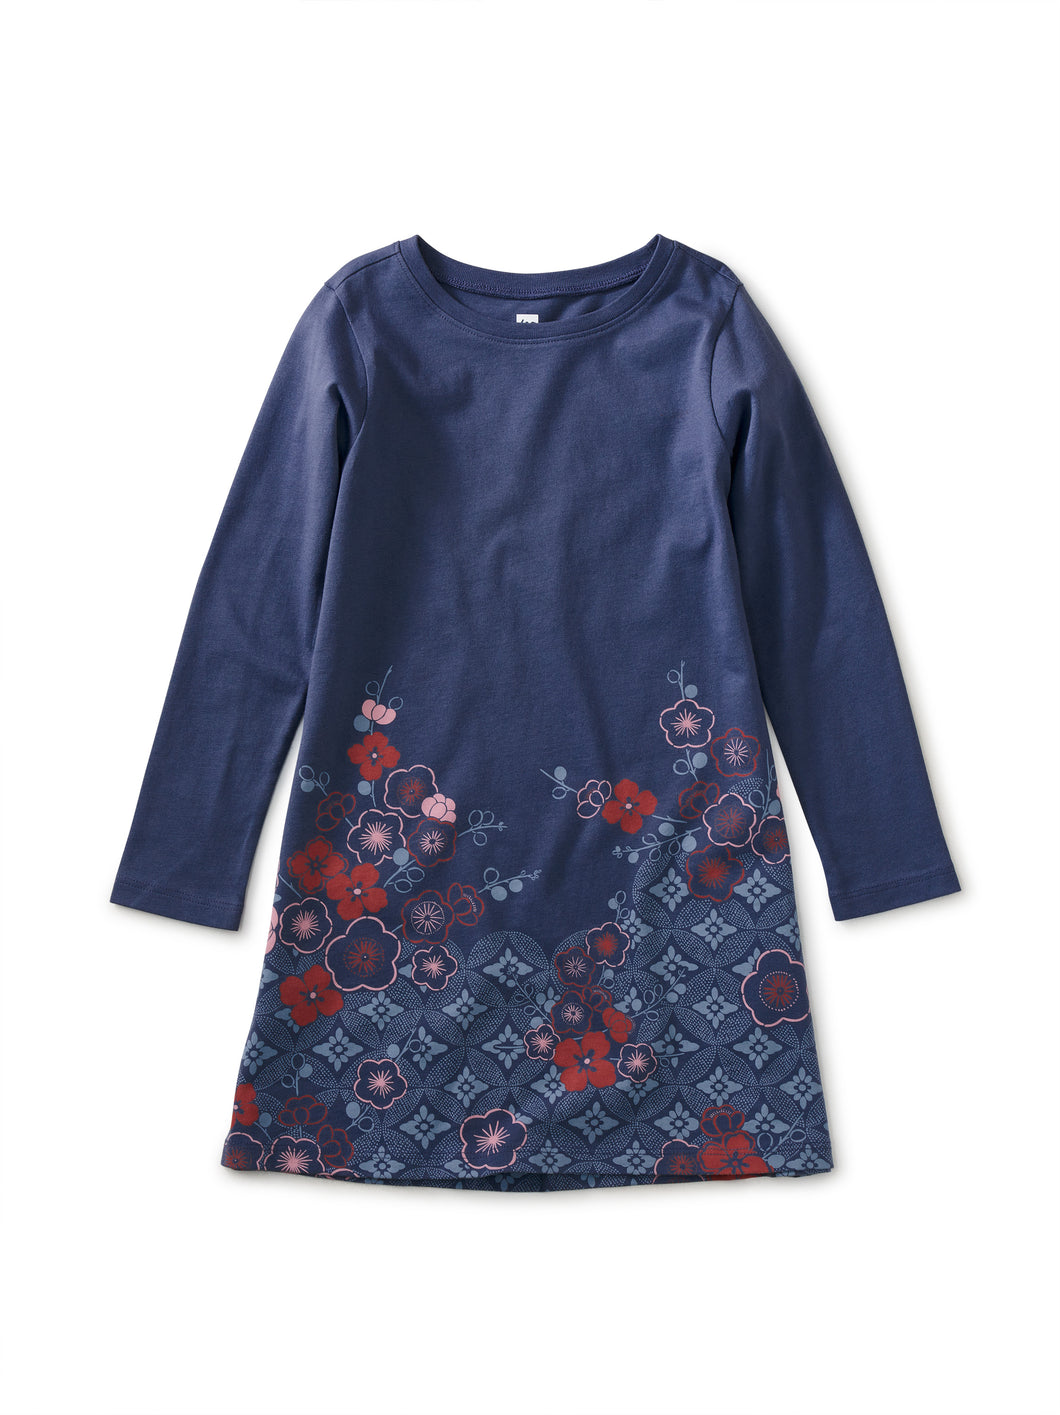 Tea Collection Kimono Floral T-Shirt Dress - Triumph Blue